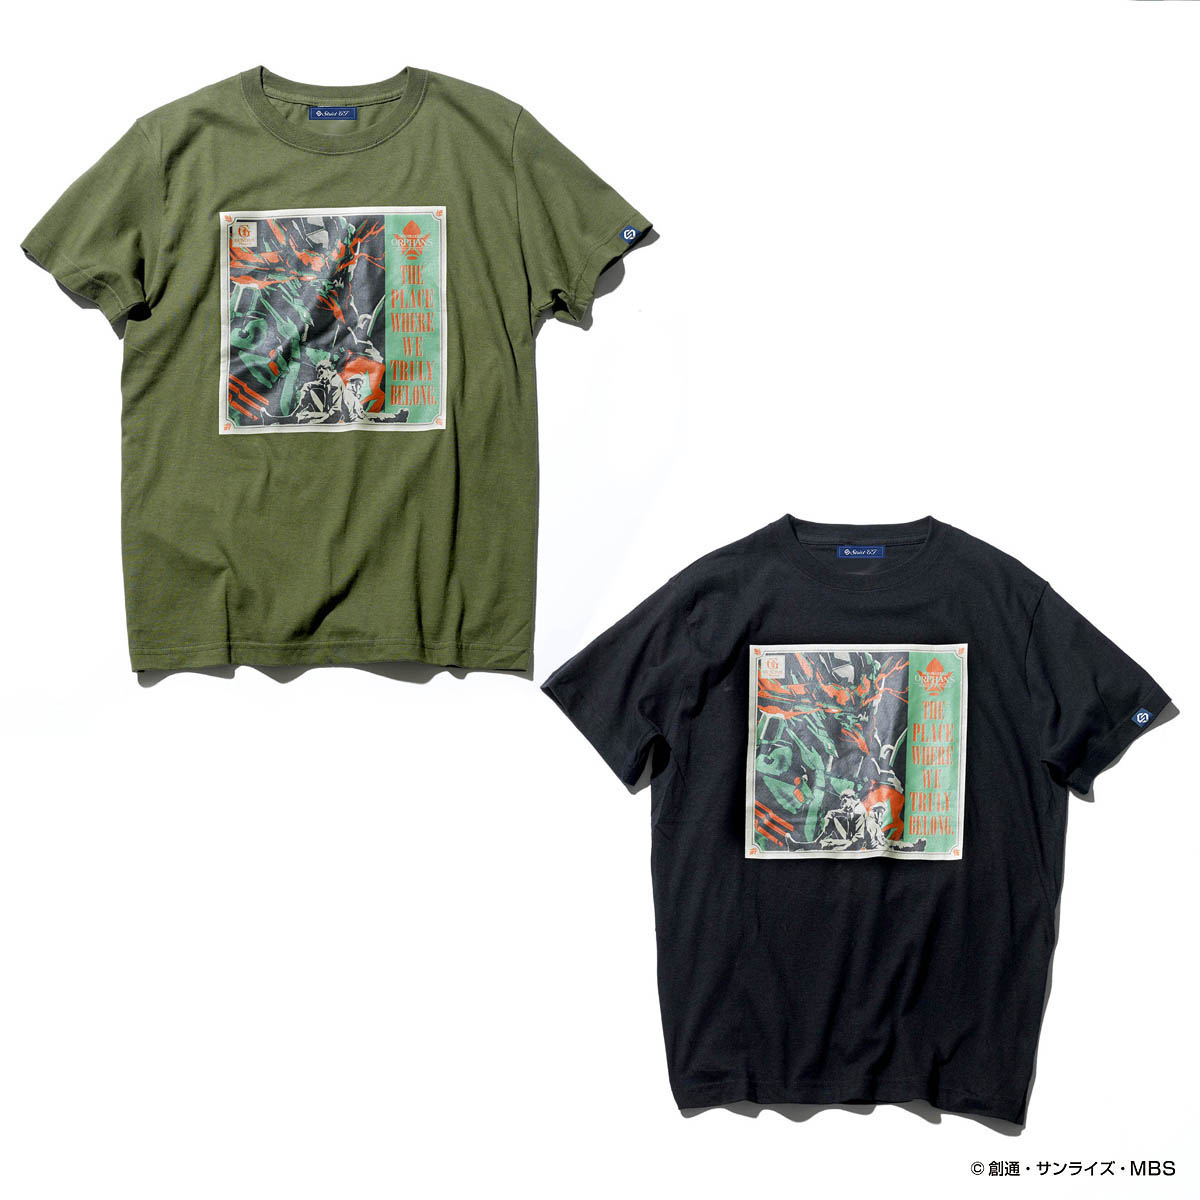 STRICT-G GUNDAM RECORDS 『機動戦士ガンダム 鉄血のオルフェンズ』Tシャツ